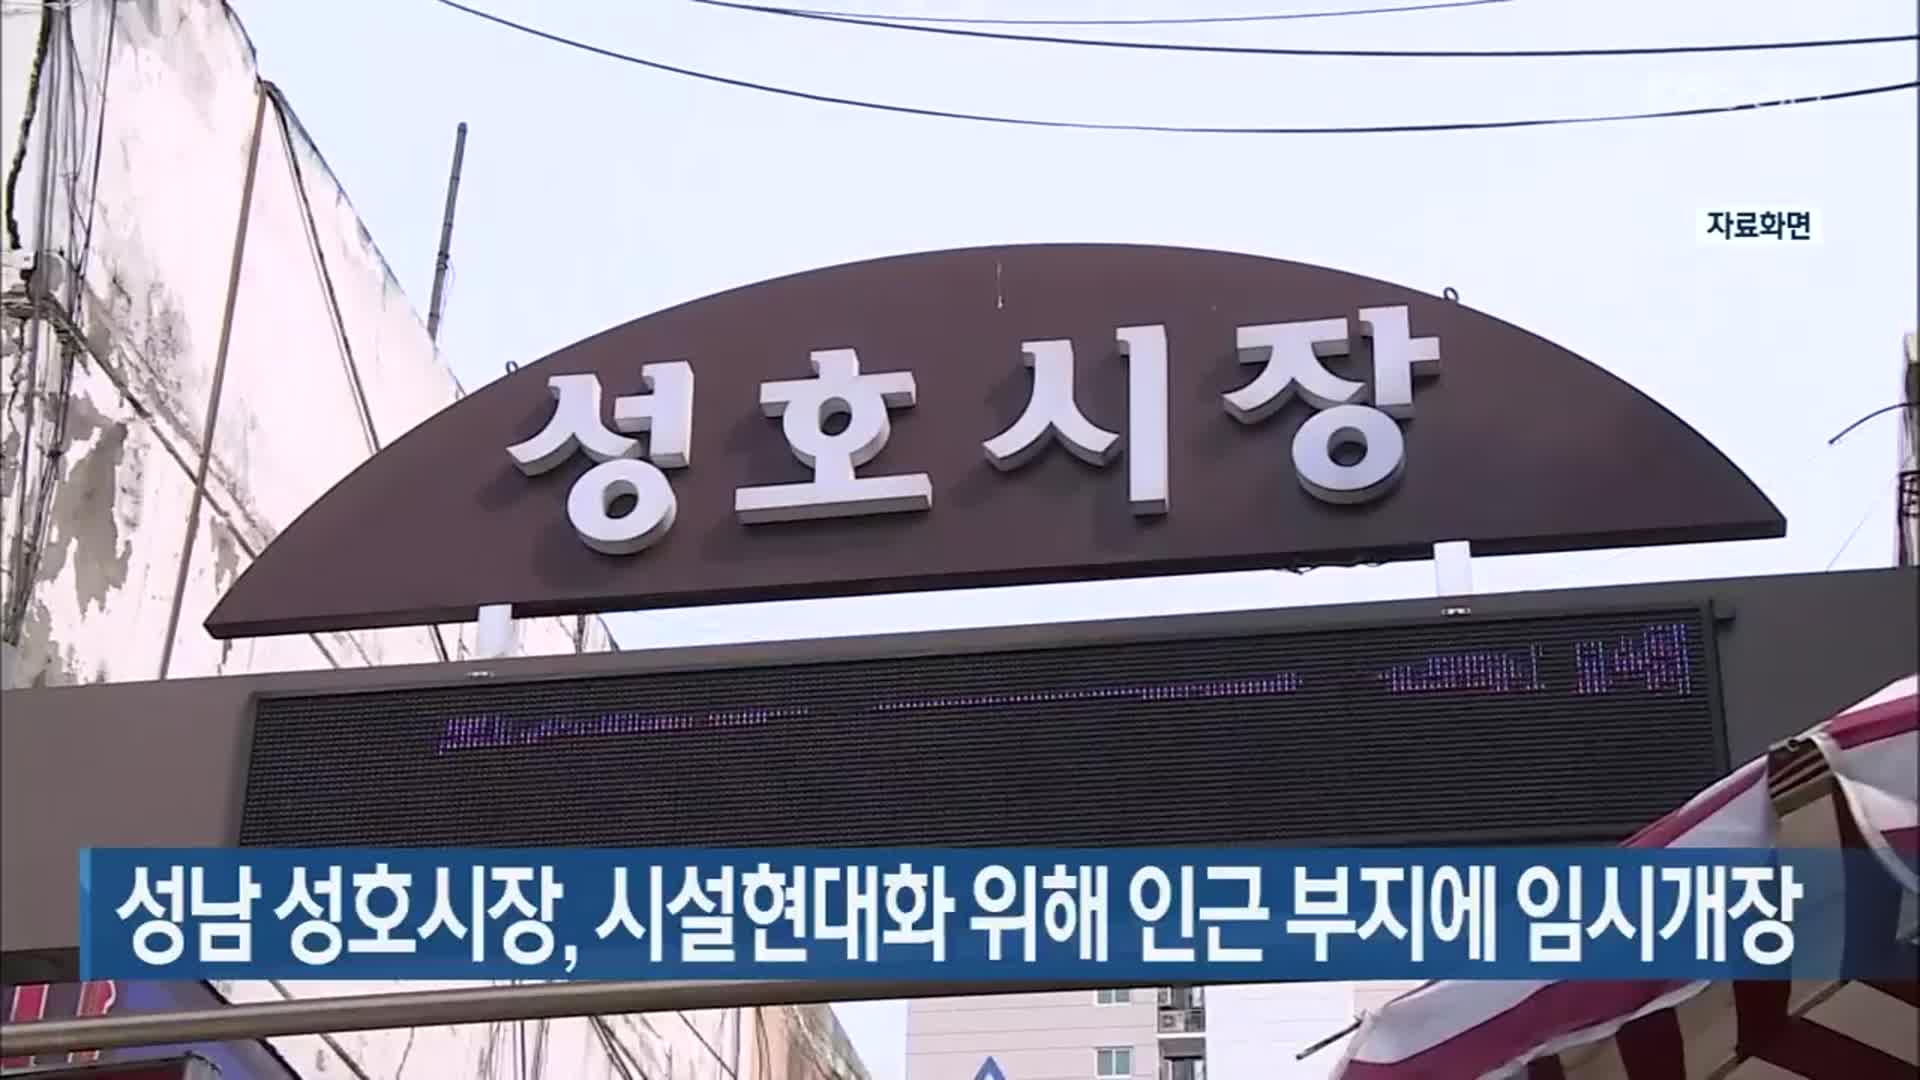 성남 성호시장, 시설현대화 위해 인근 부지에 임시개장